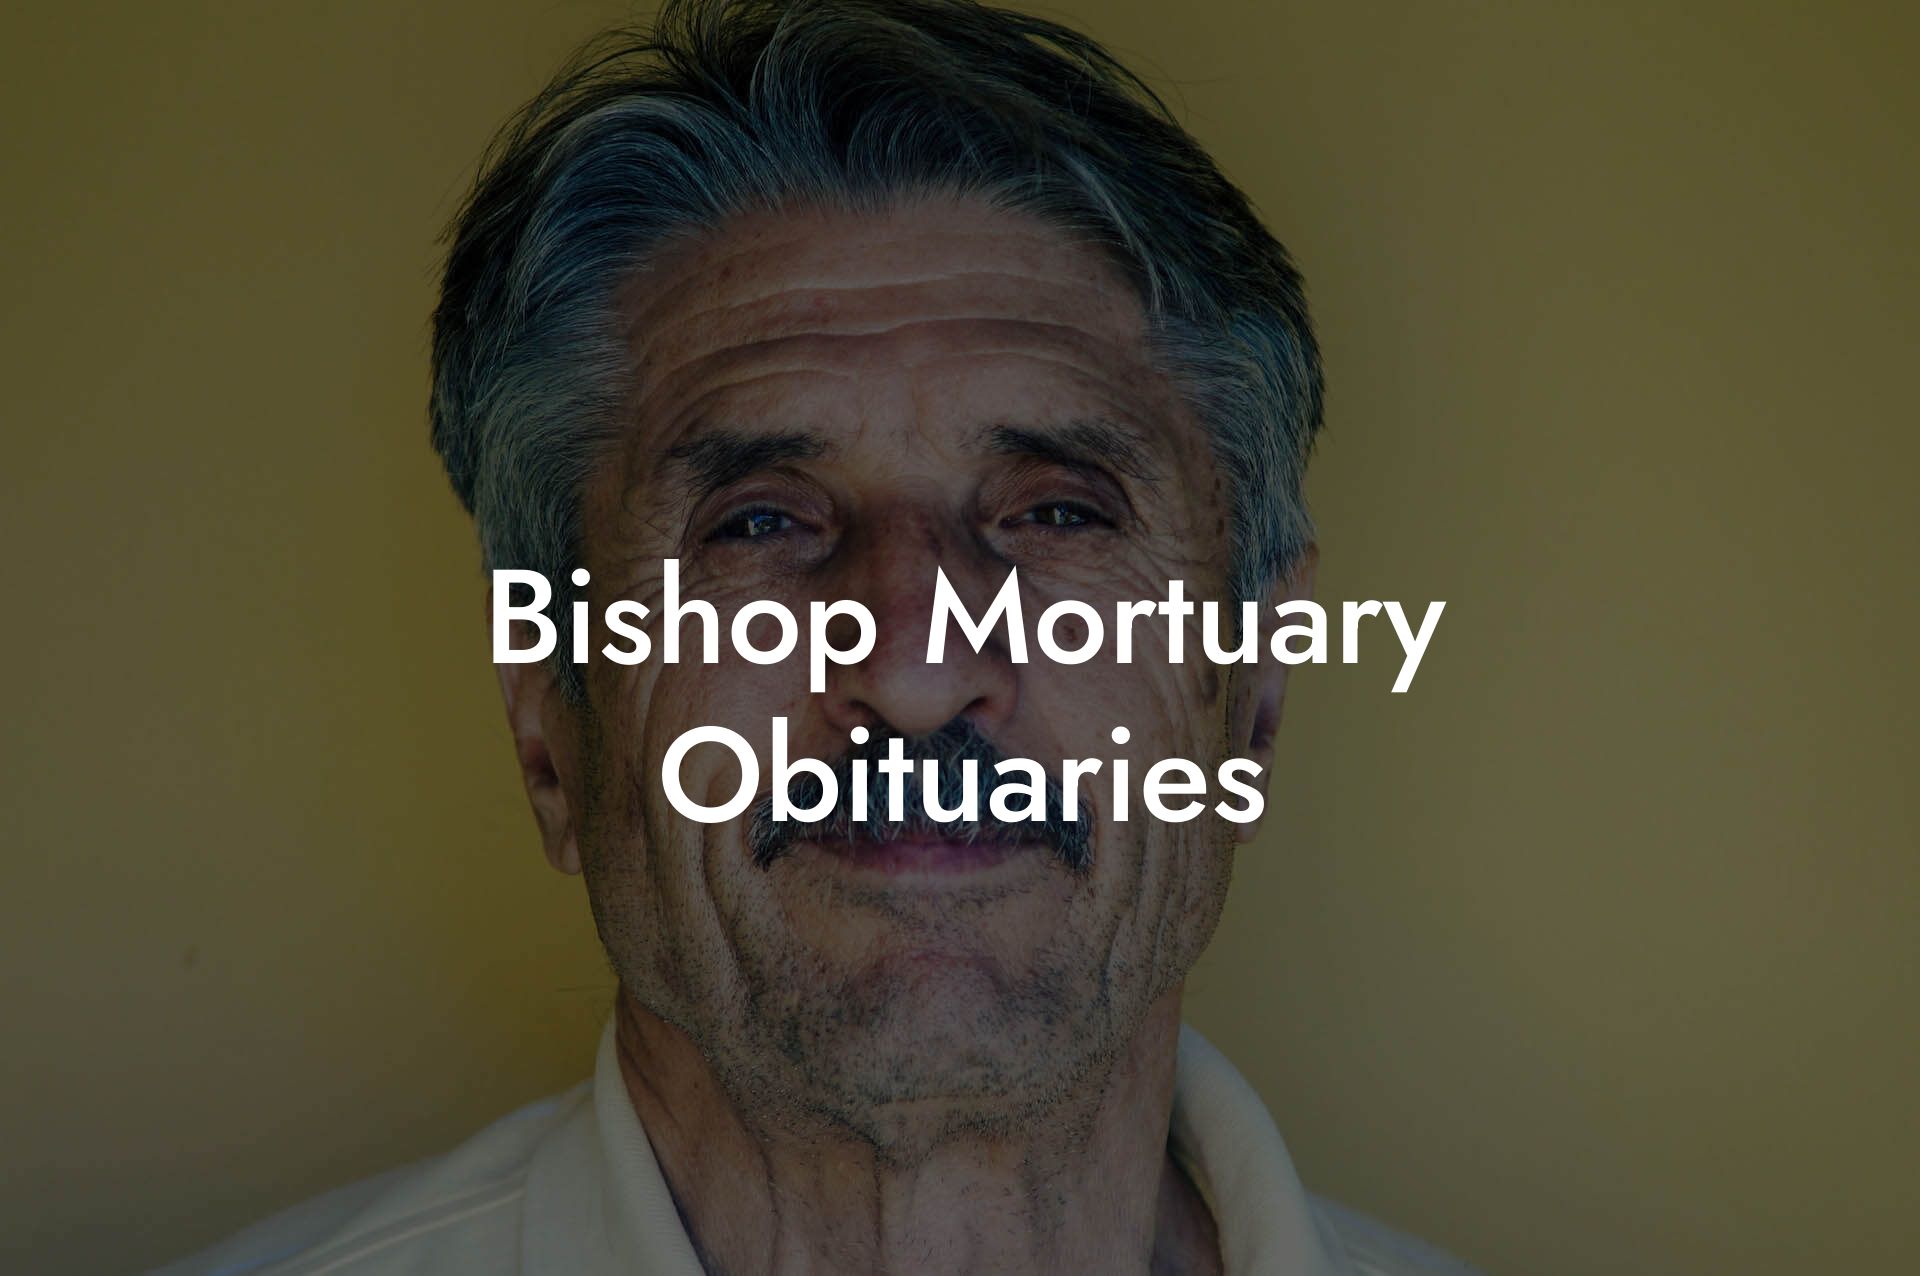 Bishop Mortuary Obituaries